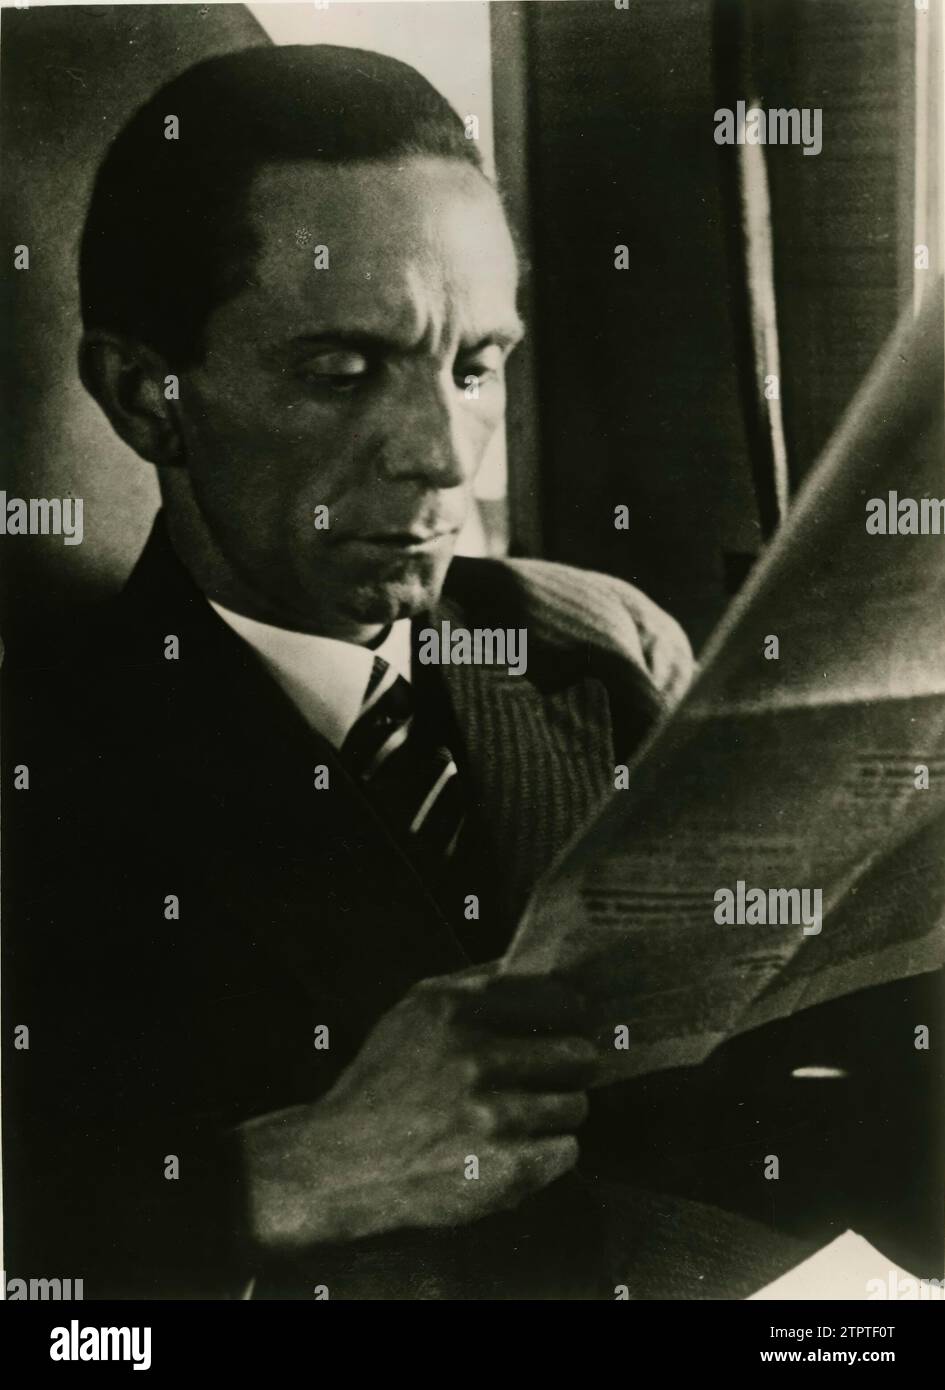 12/31/1934. Dr. Paul Joseph Goebbels, Propagandaminister des Dritten Reiches, eine der Hauptfiguren des NS-Deutschlands. Quelle: Album/Archivo ABC Stockfoto